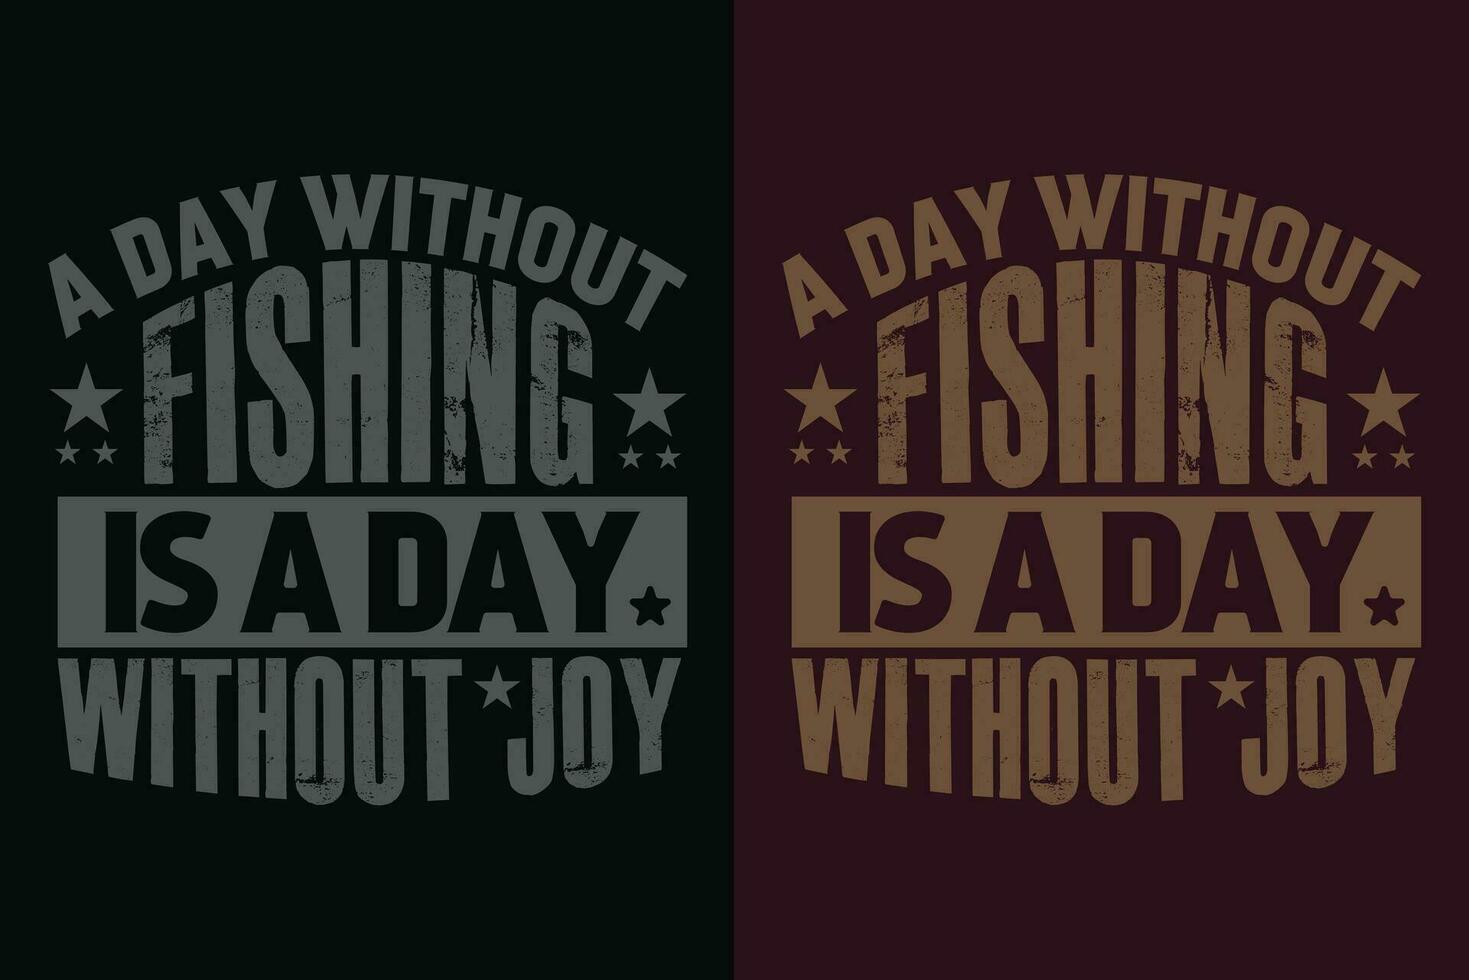 une journée sans pour autant pêche est une journée sans pour autant joie, pêche chemise, pêcheur cadeaux, pêcheur T-shirt, marrant pêche chemise, présent pour pêcheur, pêche cadeau, pêche papa cadeaux, pêche amoureux chemise vecteur